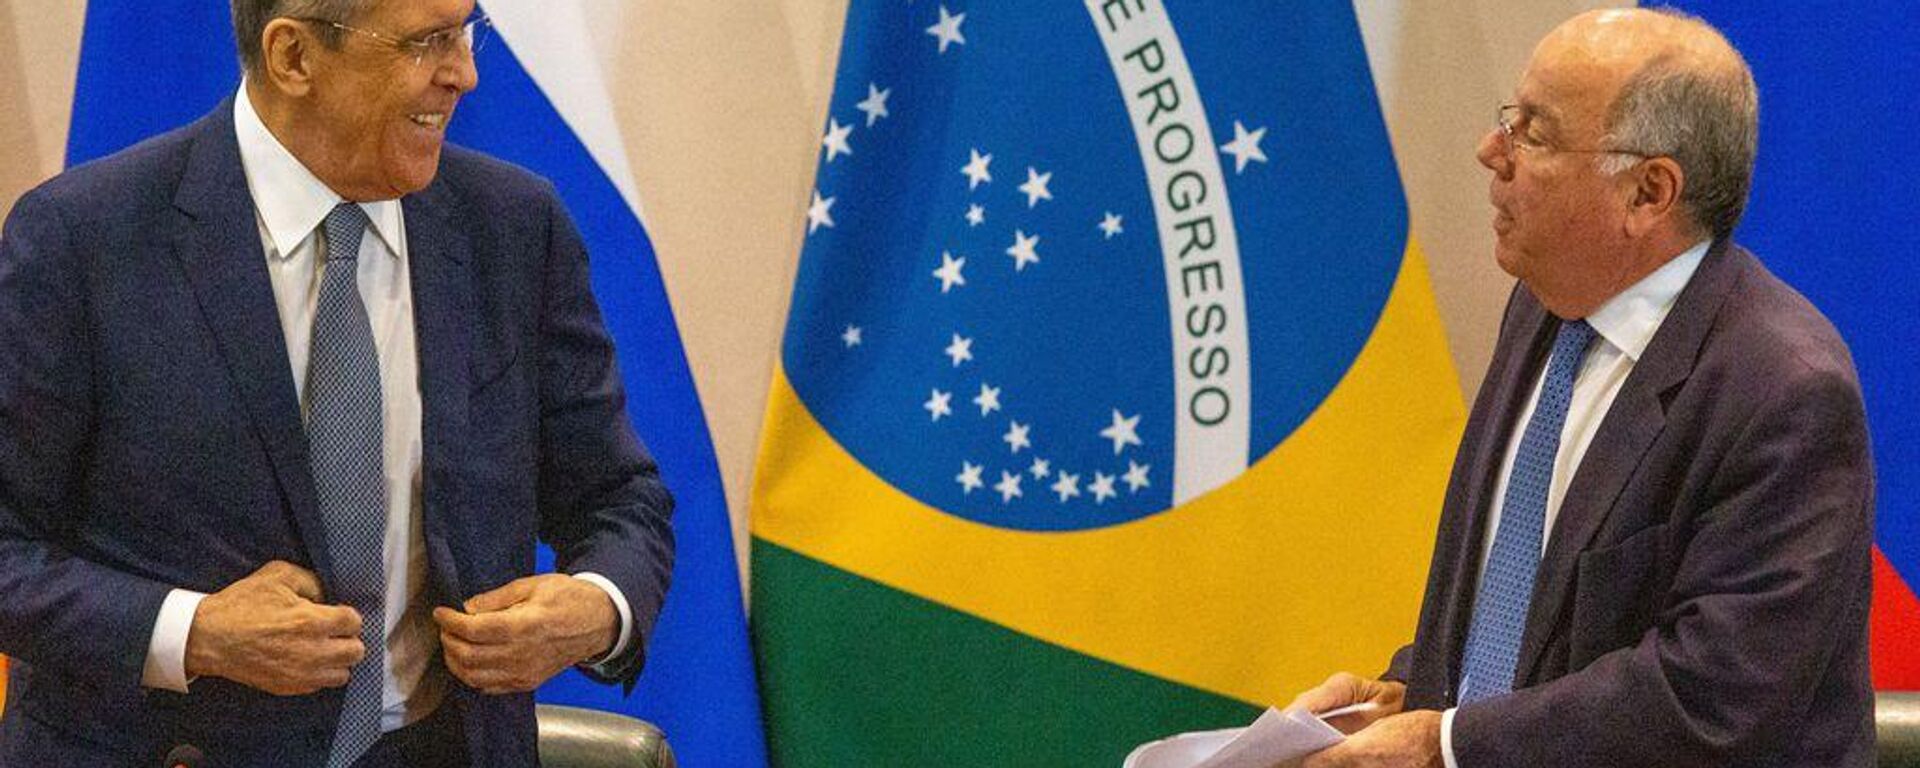 Os ministros das Relações Exteriores da Rússia, Sergei Lavrov, e do Brasil, Mauro Vieira, durante conferência de imprensa no Palácio do Itamaraty, Brasília, 17 de abril de 2023 - Sputnik Brasil, 1920, 17.04.2023